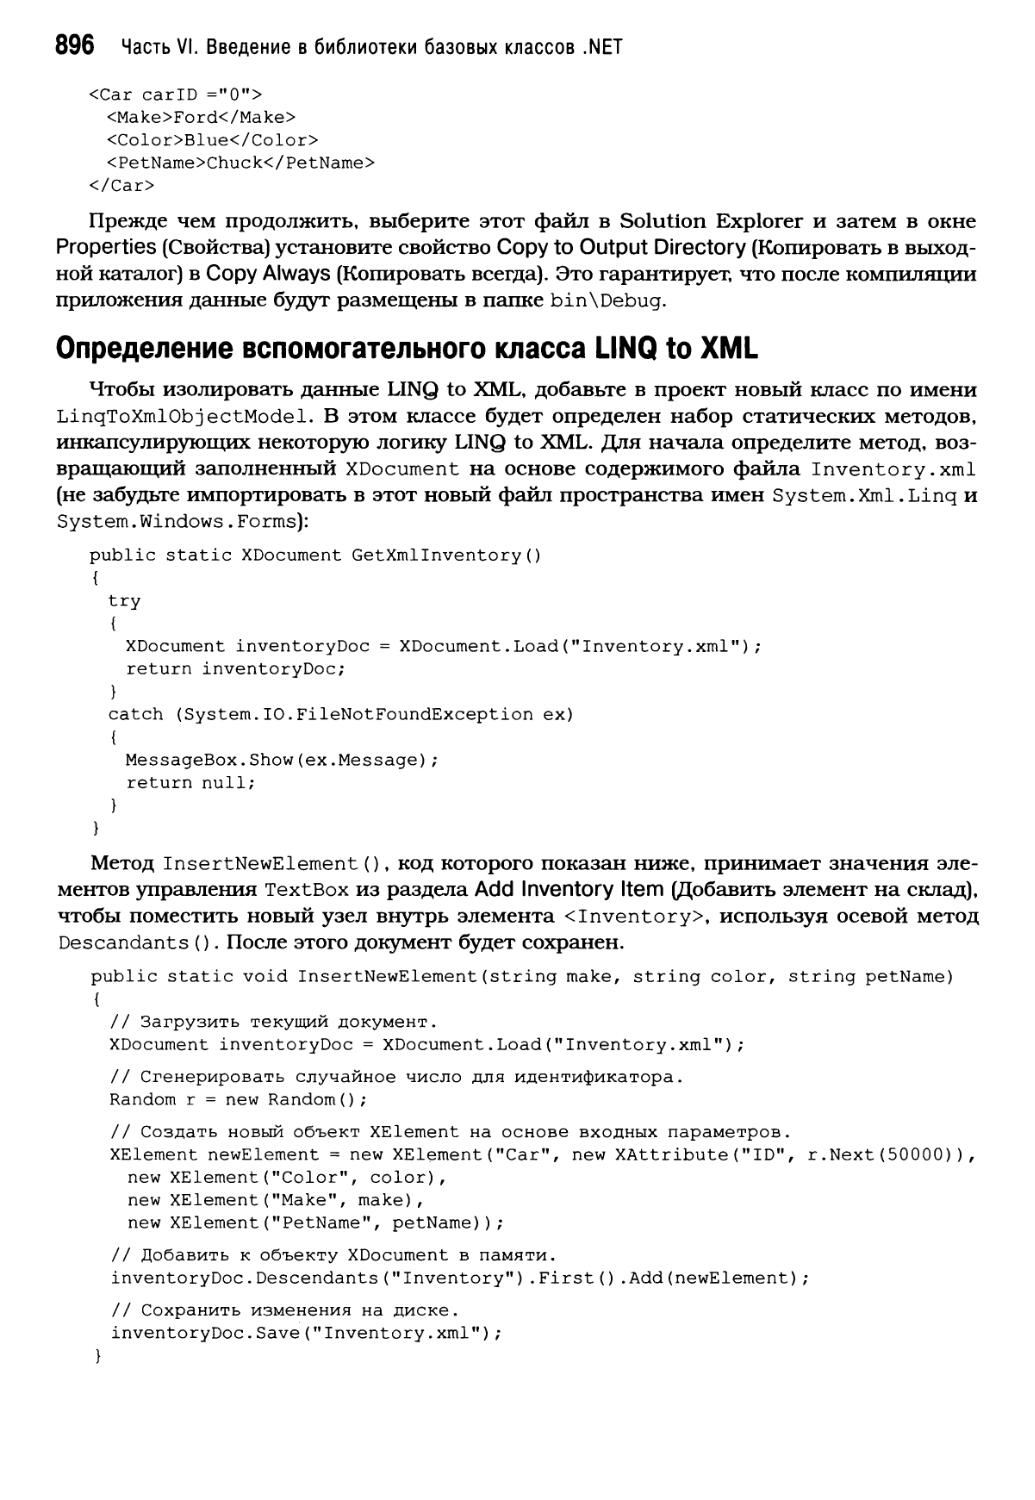 Определение вспомогательного класса LINQ to XML